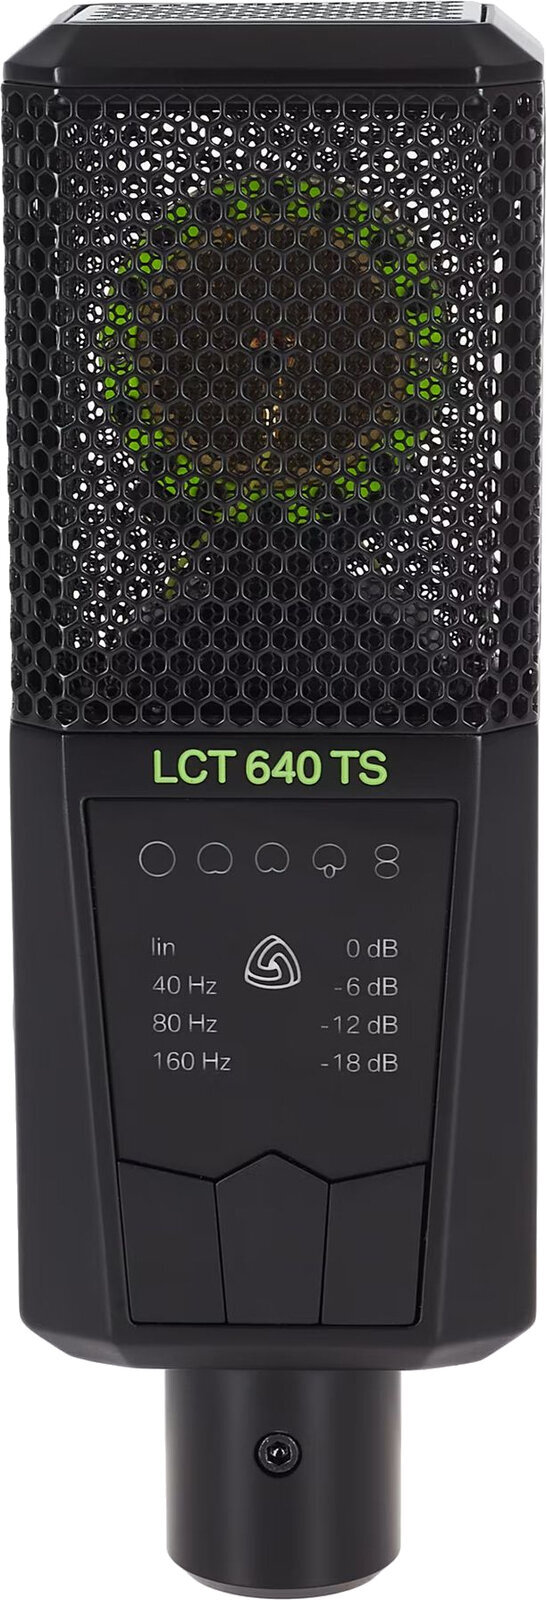 Студиен кондензаторен микрофон LEWITT LCT 640TS Студиен кондензаторен микрофон